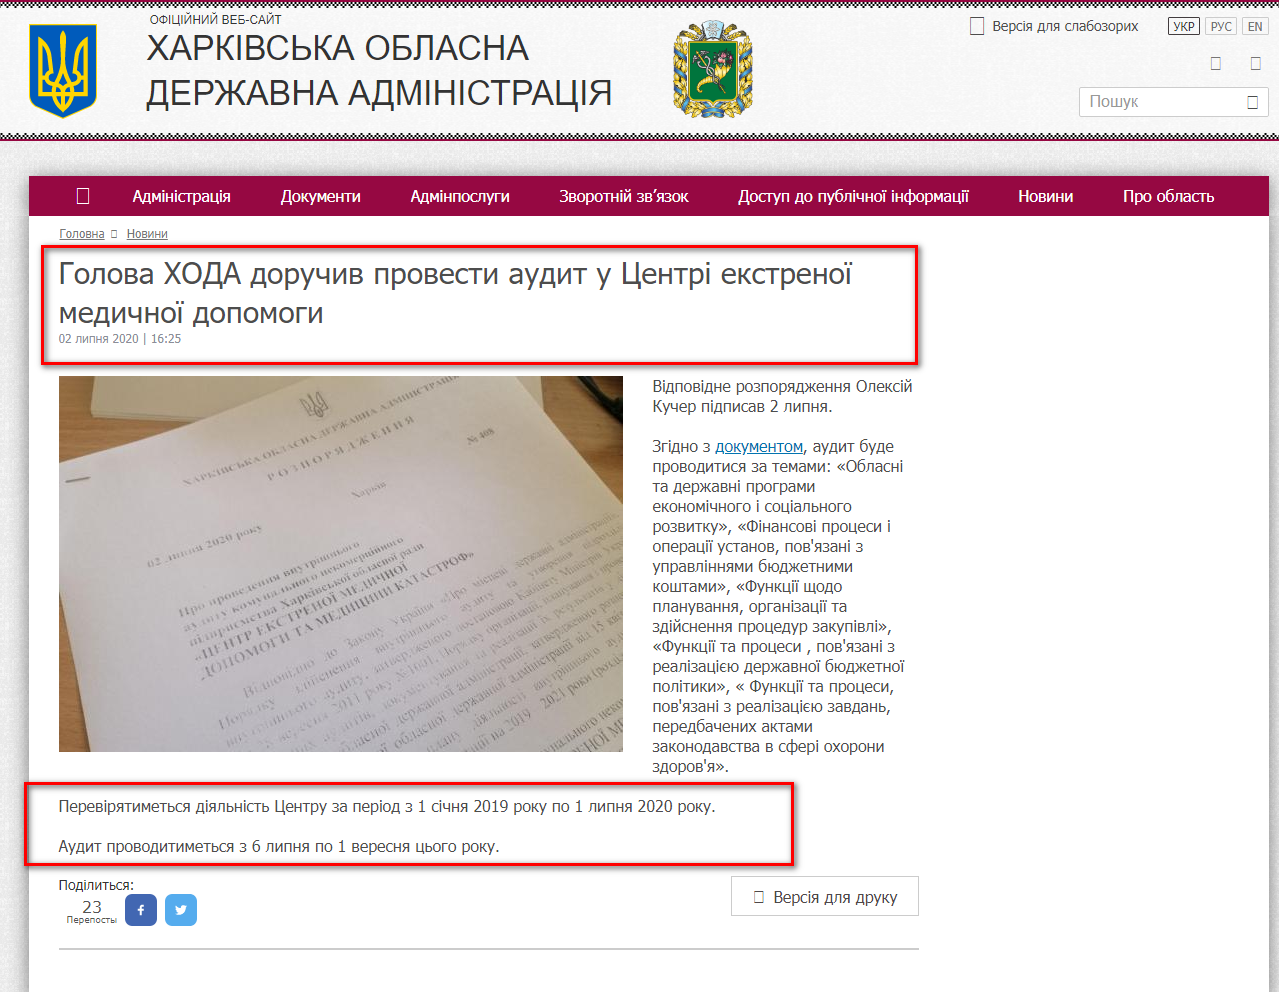 http://kharkivoda.gov.ua/news/104092